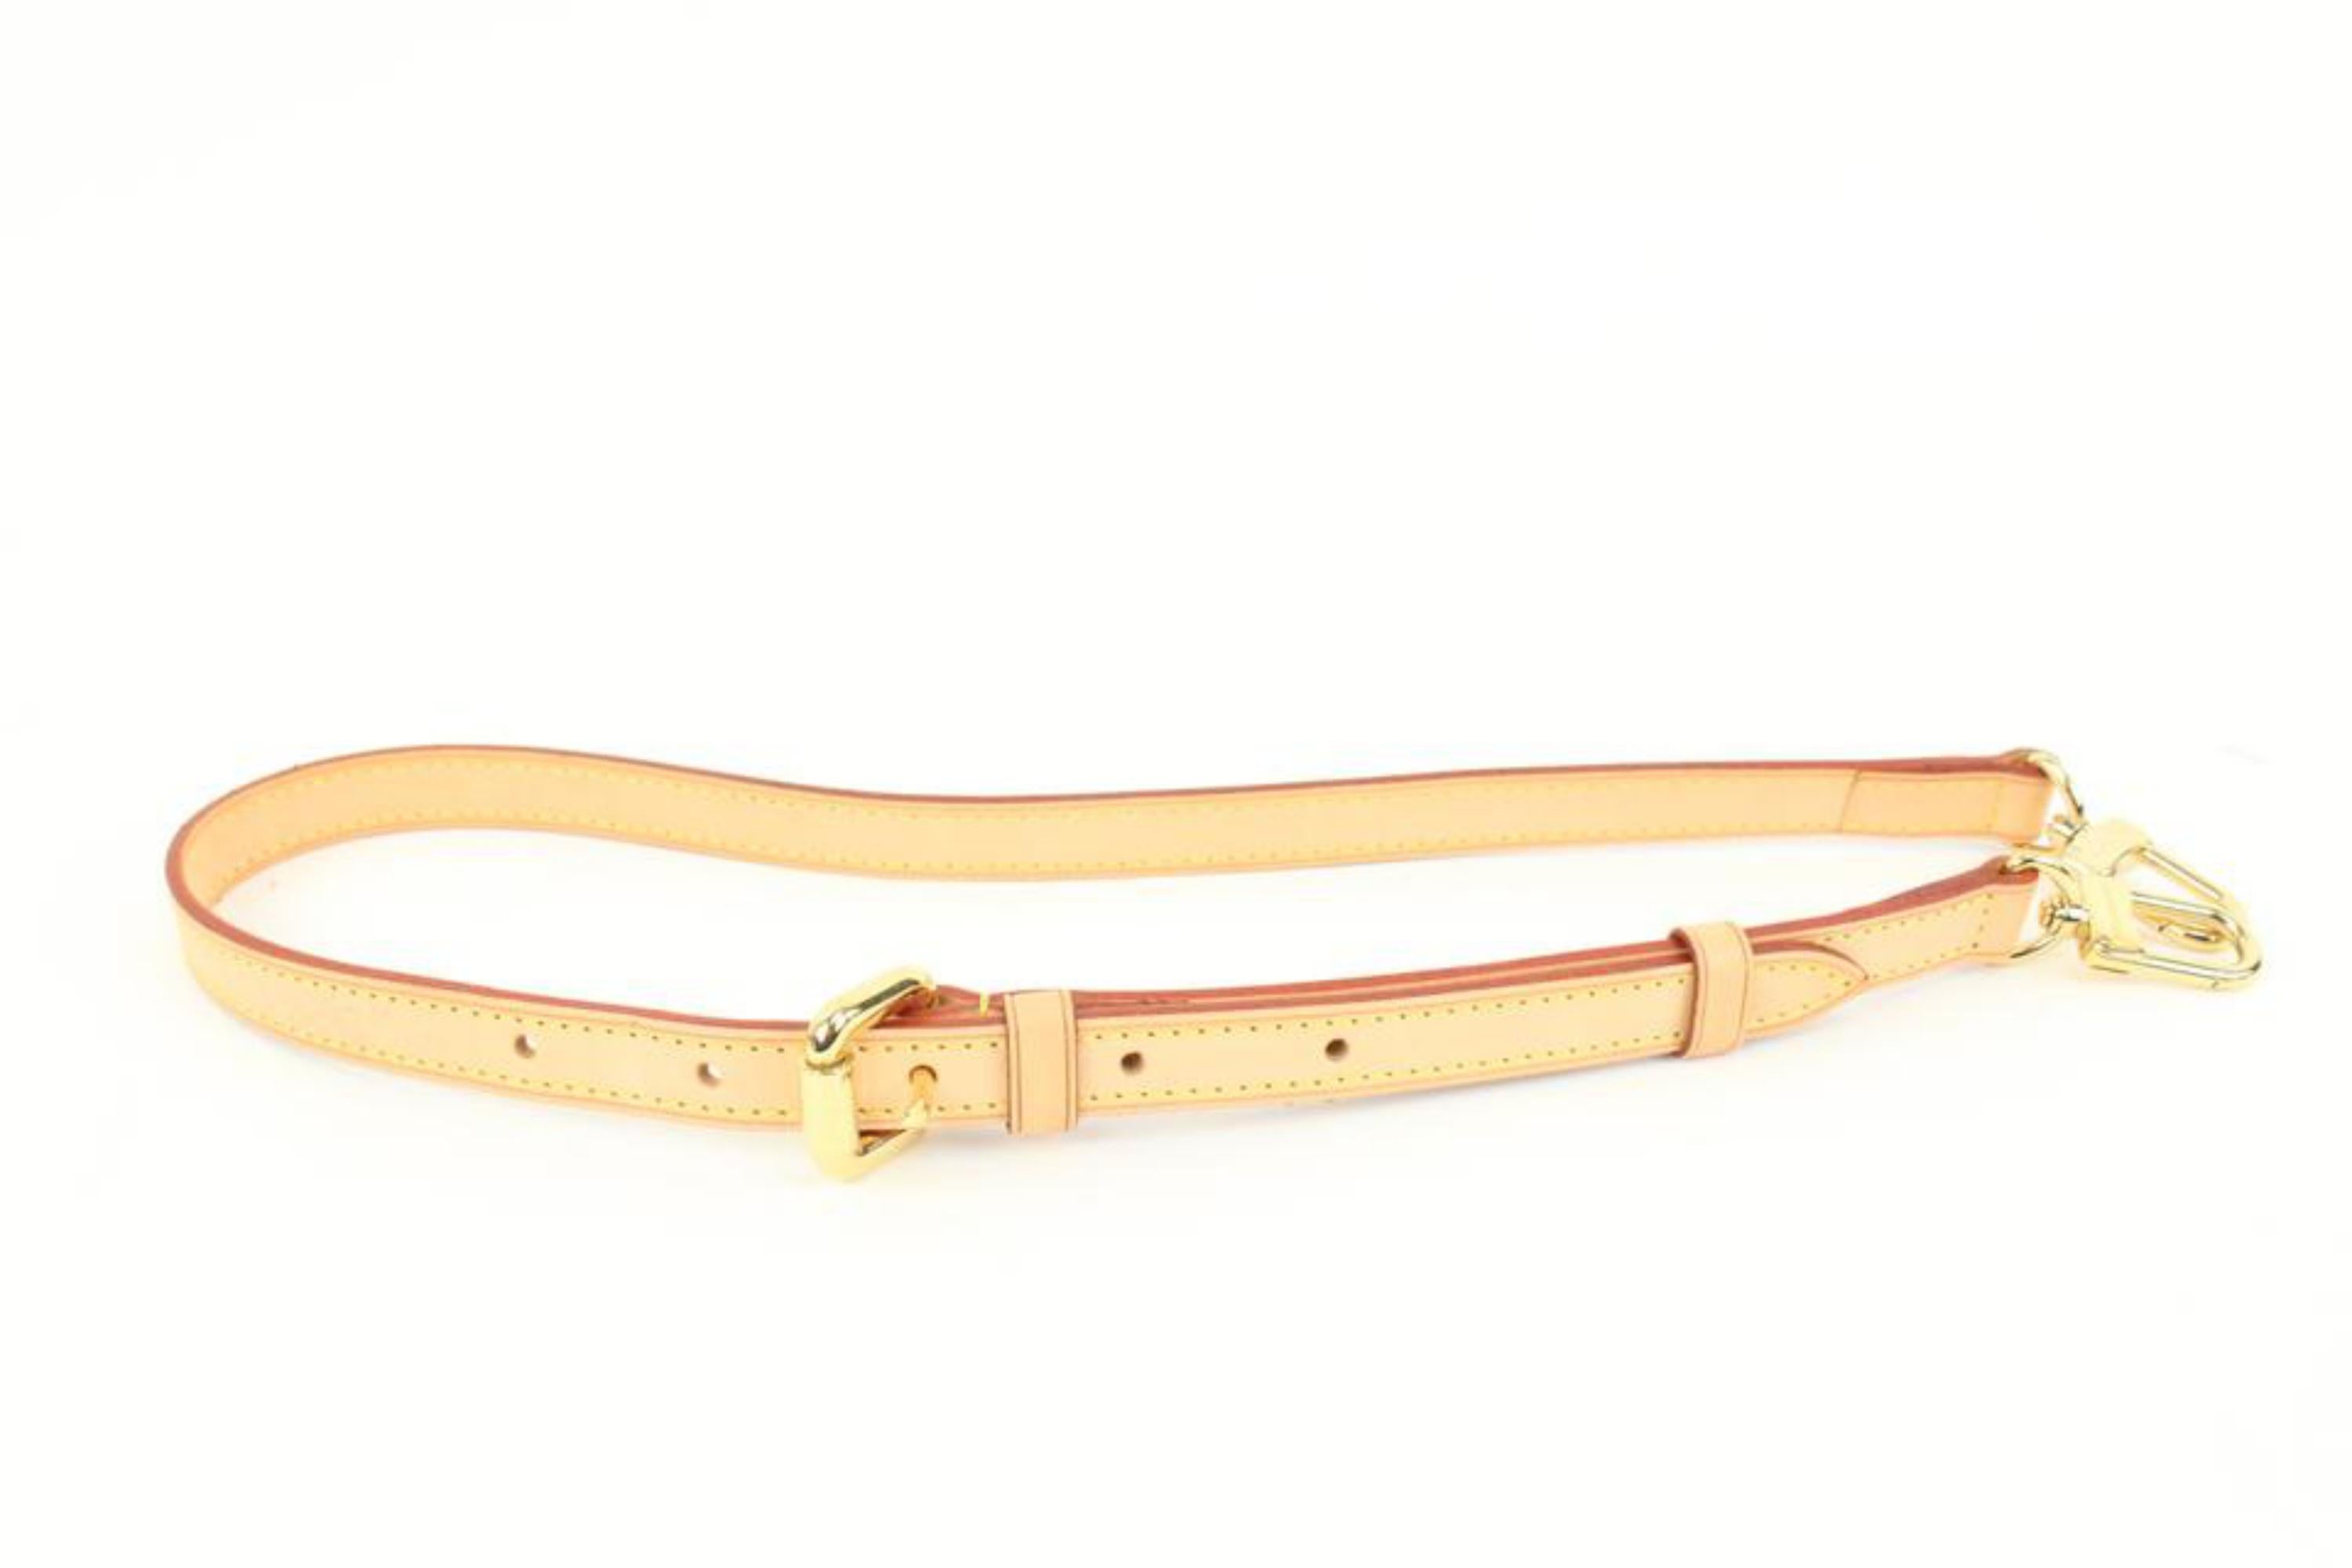 Louis Vuitton Vachetta Adjustable Shoulder Strap 18lv323s
Measurements: Length:  32.5